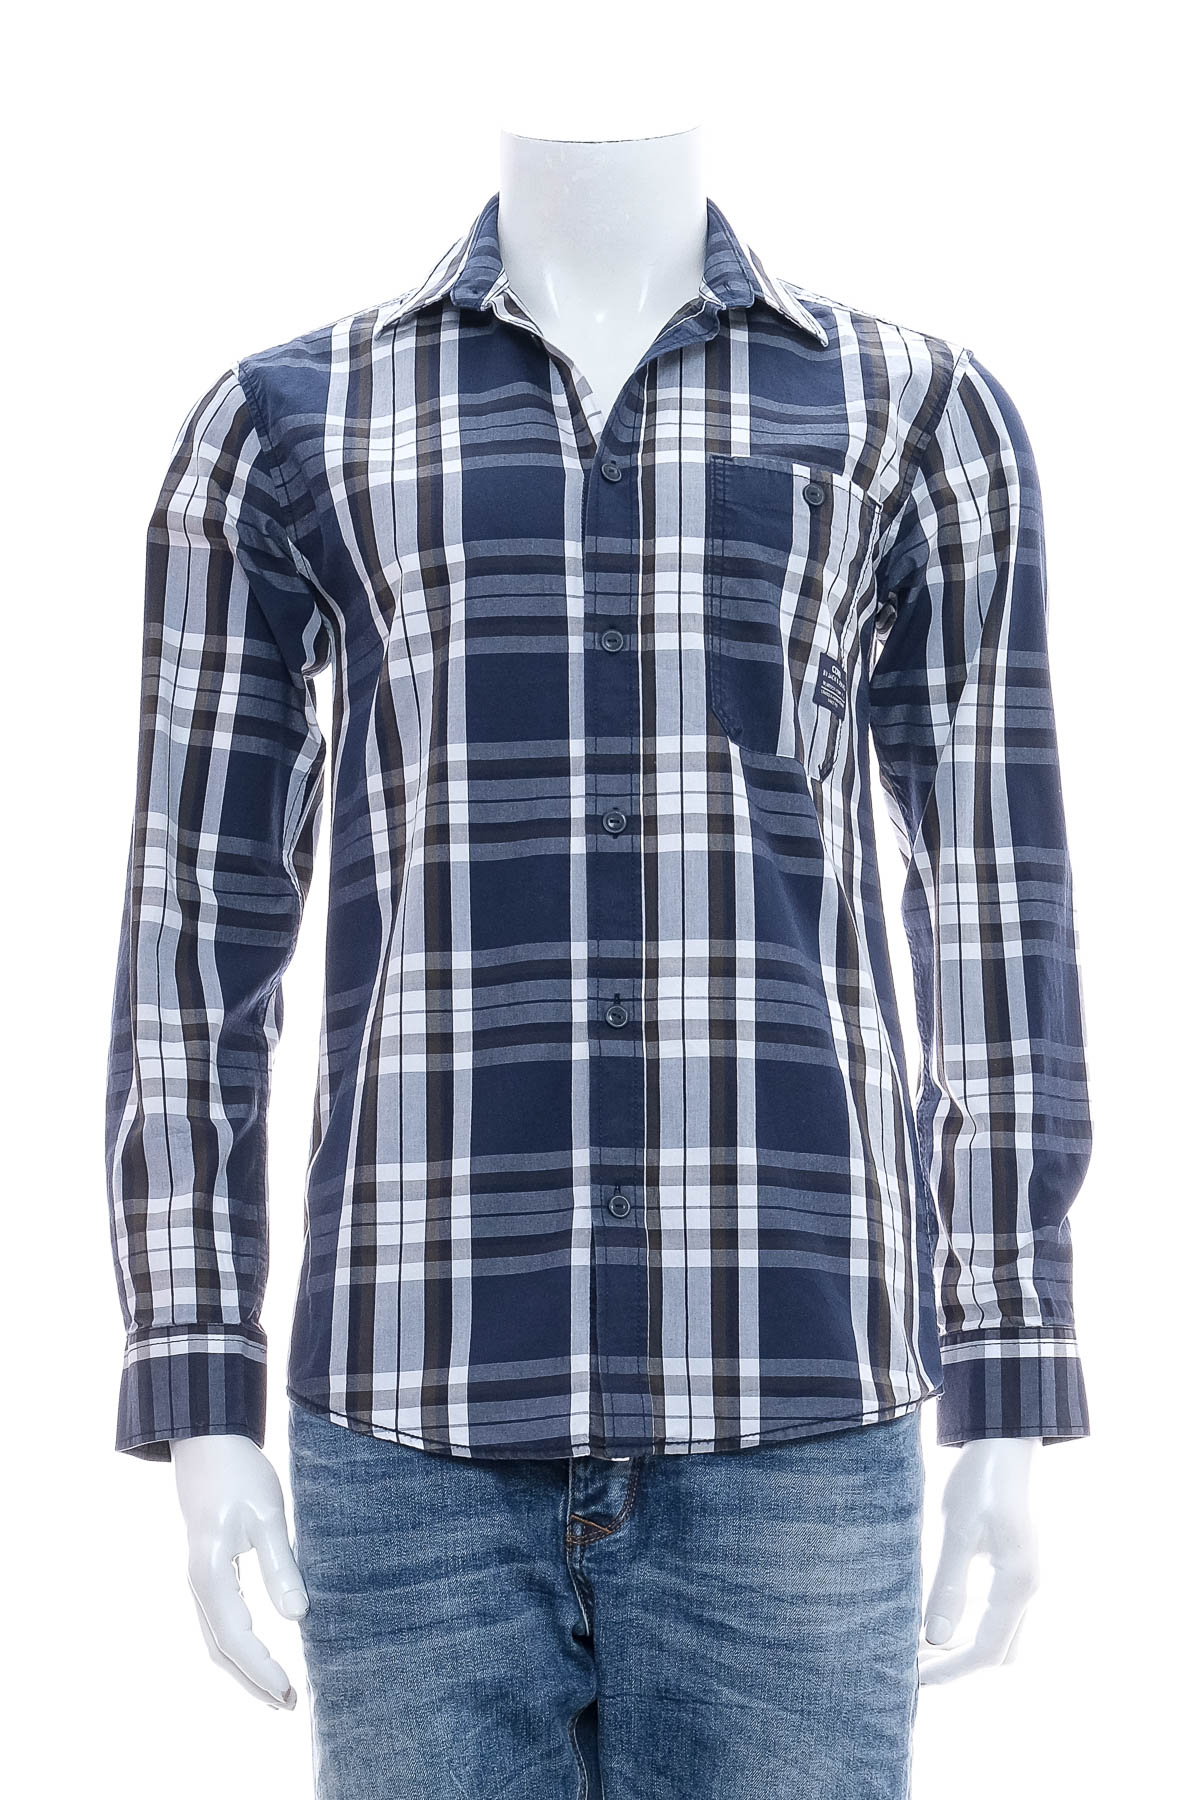 Men's shirt - CORE by Jack & Jones - 0